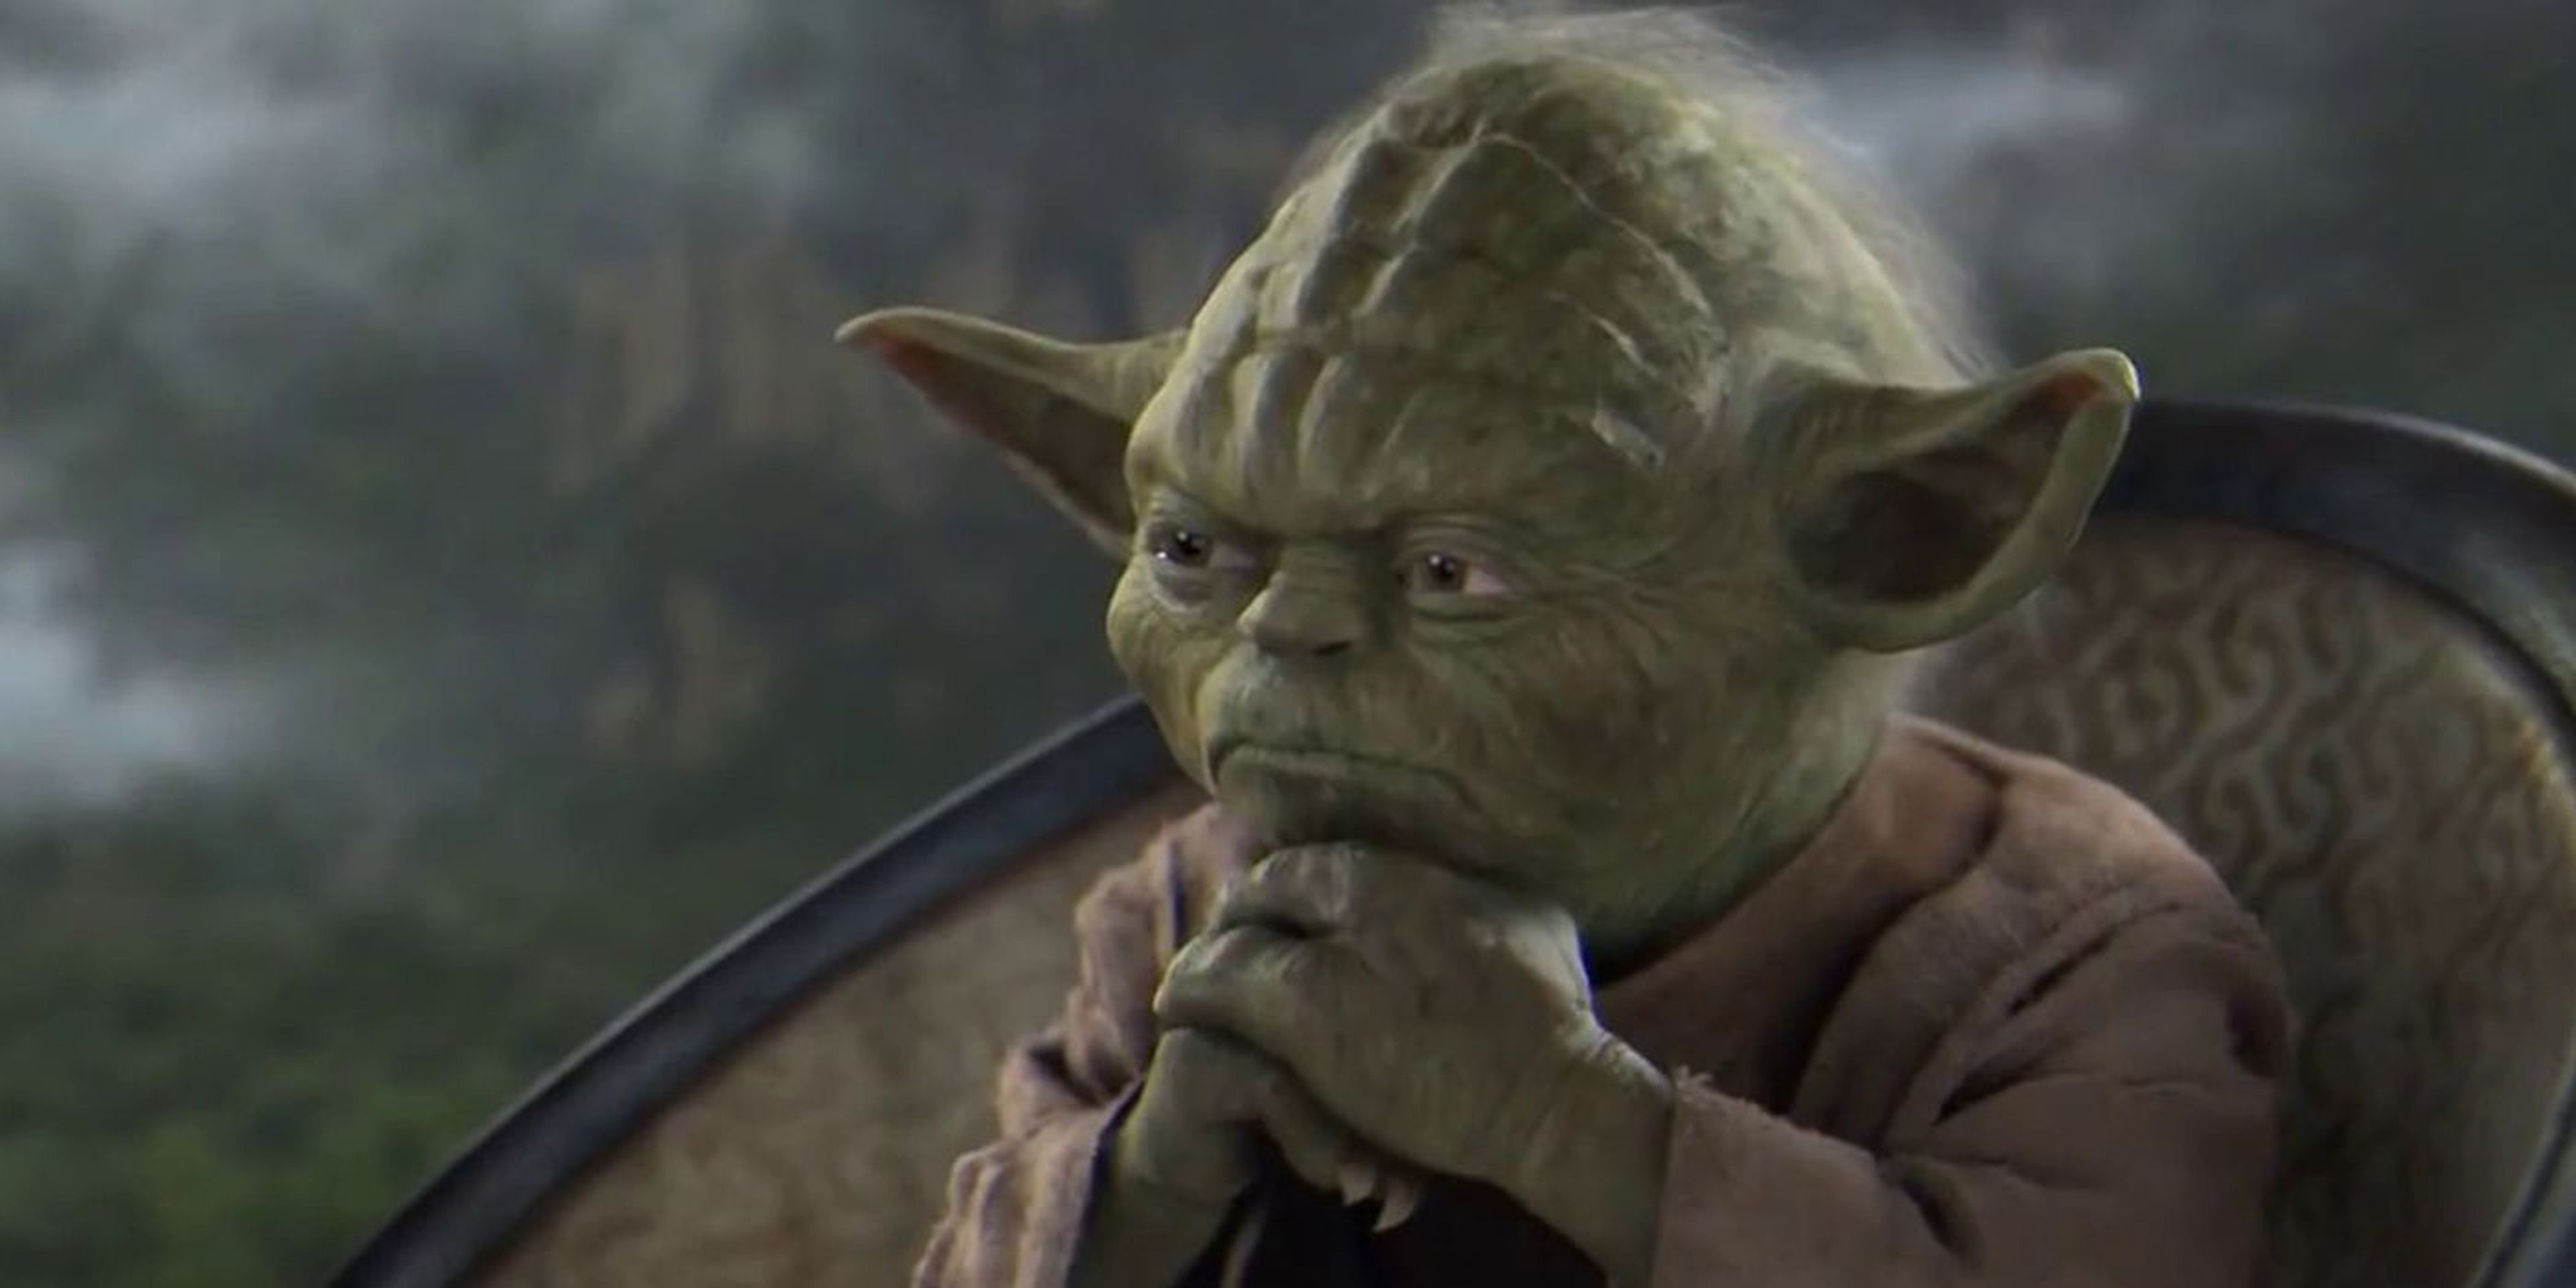 Yoda - Star Wars